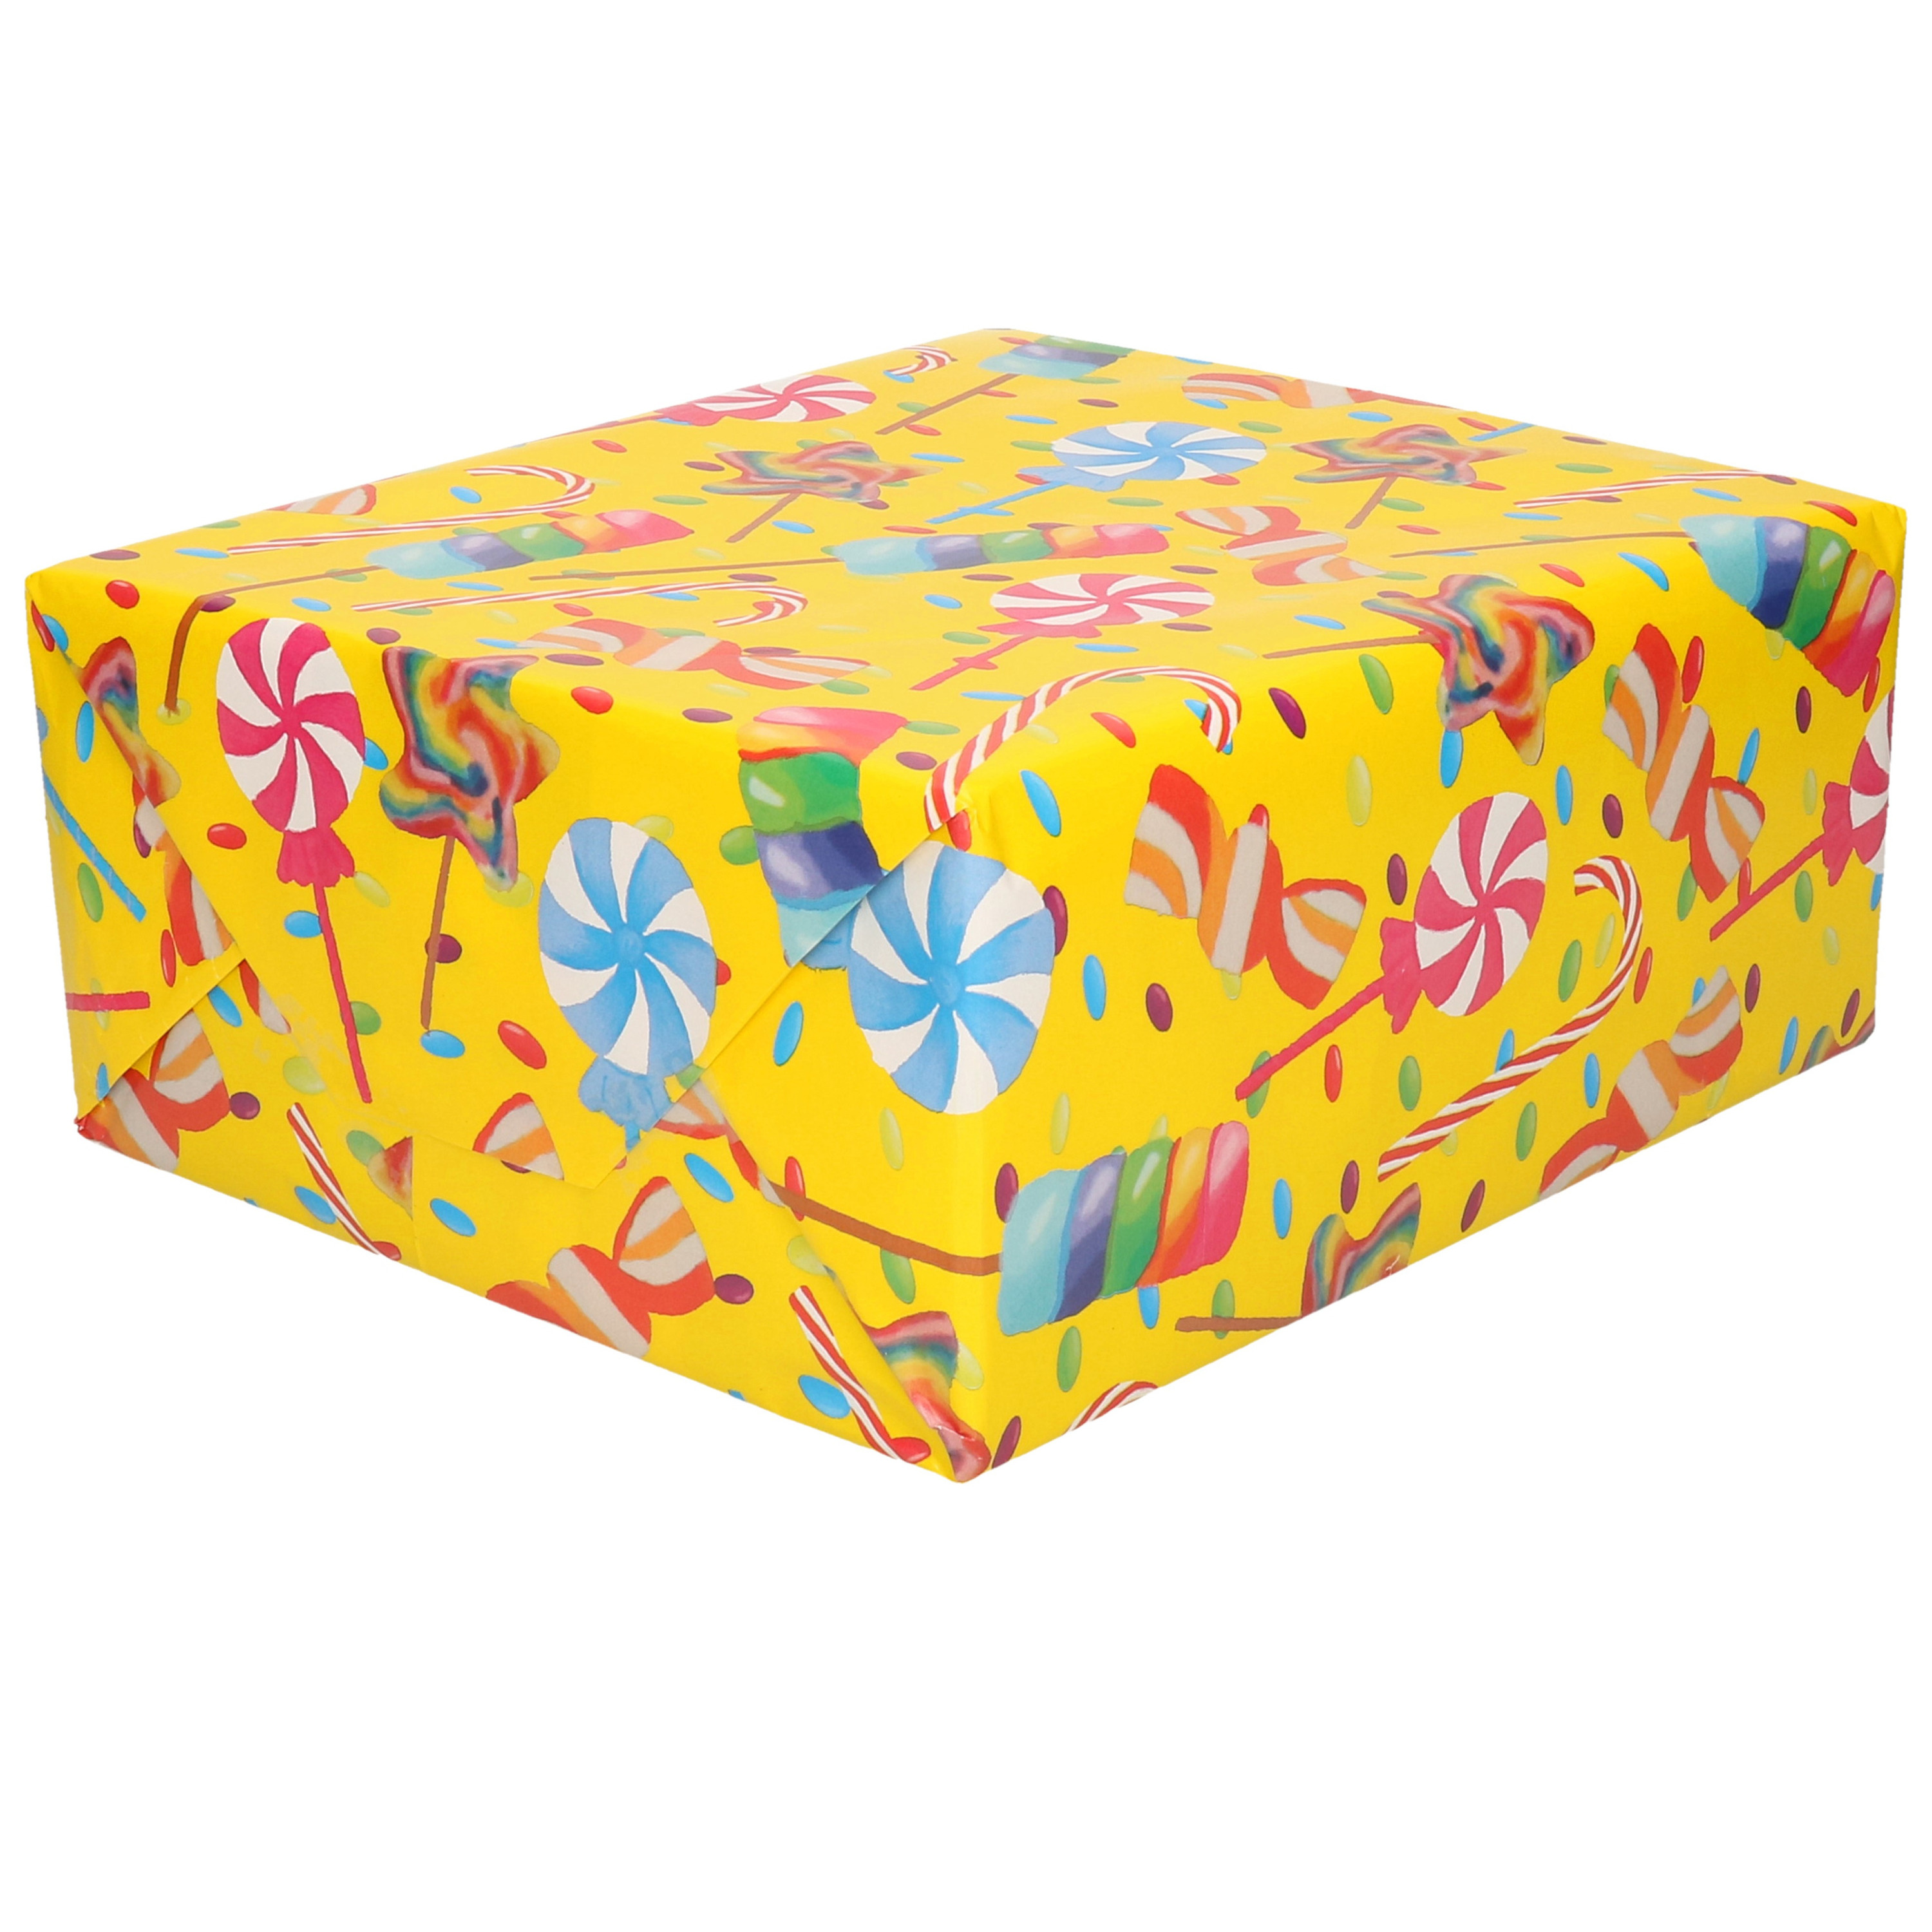 1x Verjaardagscadeau inpakpapier geel / gekleurde lollies70 x 200 cm op rol